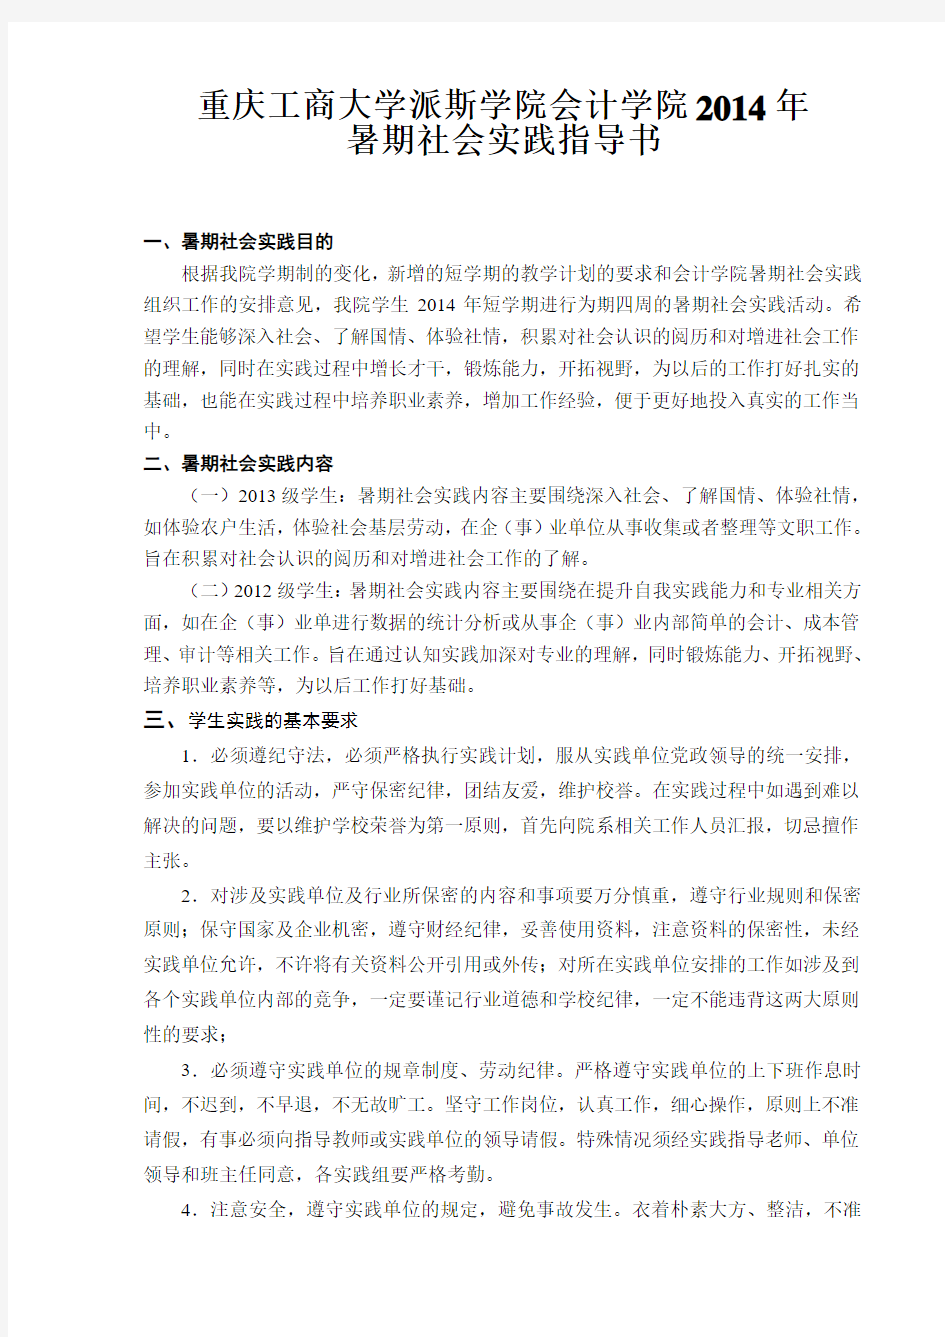 重庆工商大学派斯学院会计学院2014年暑期社会实践指导书(最终定稿)